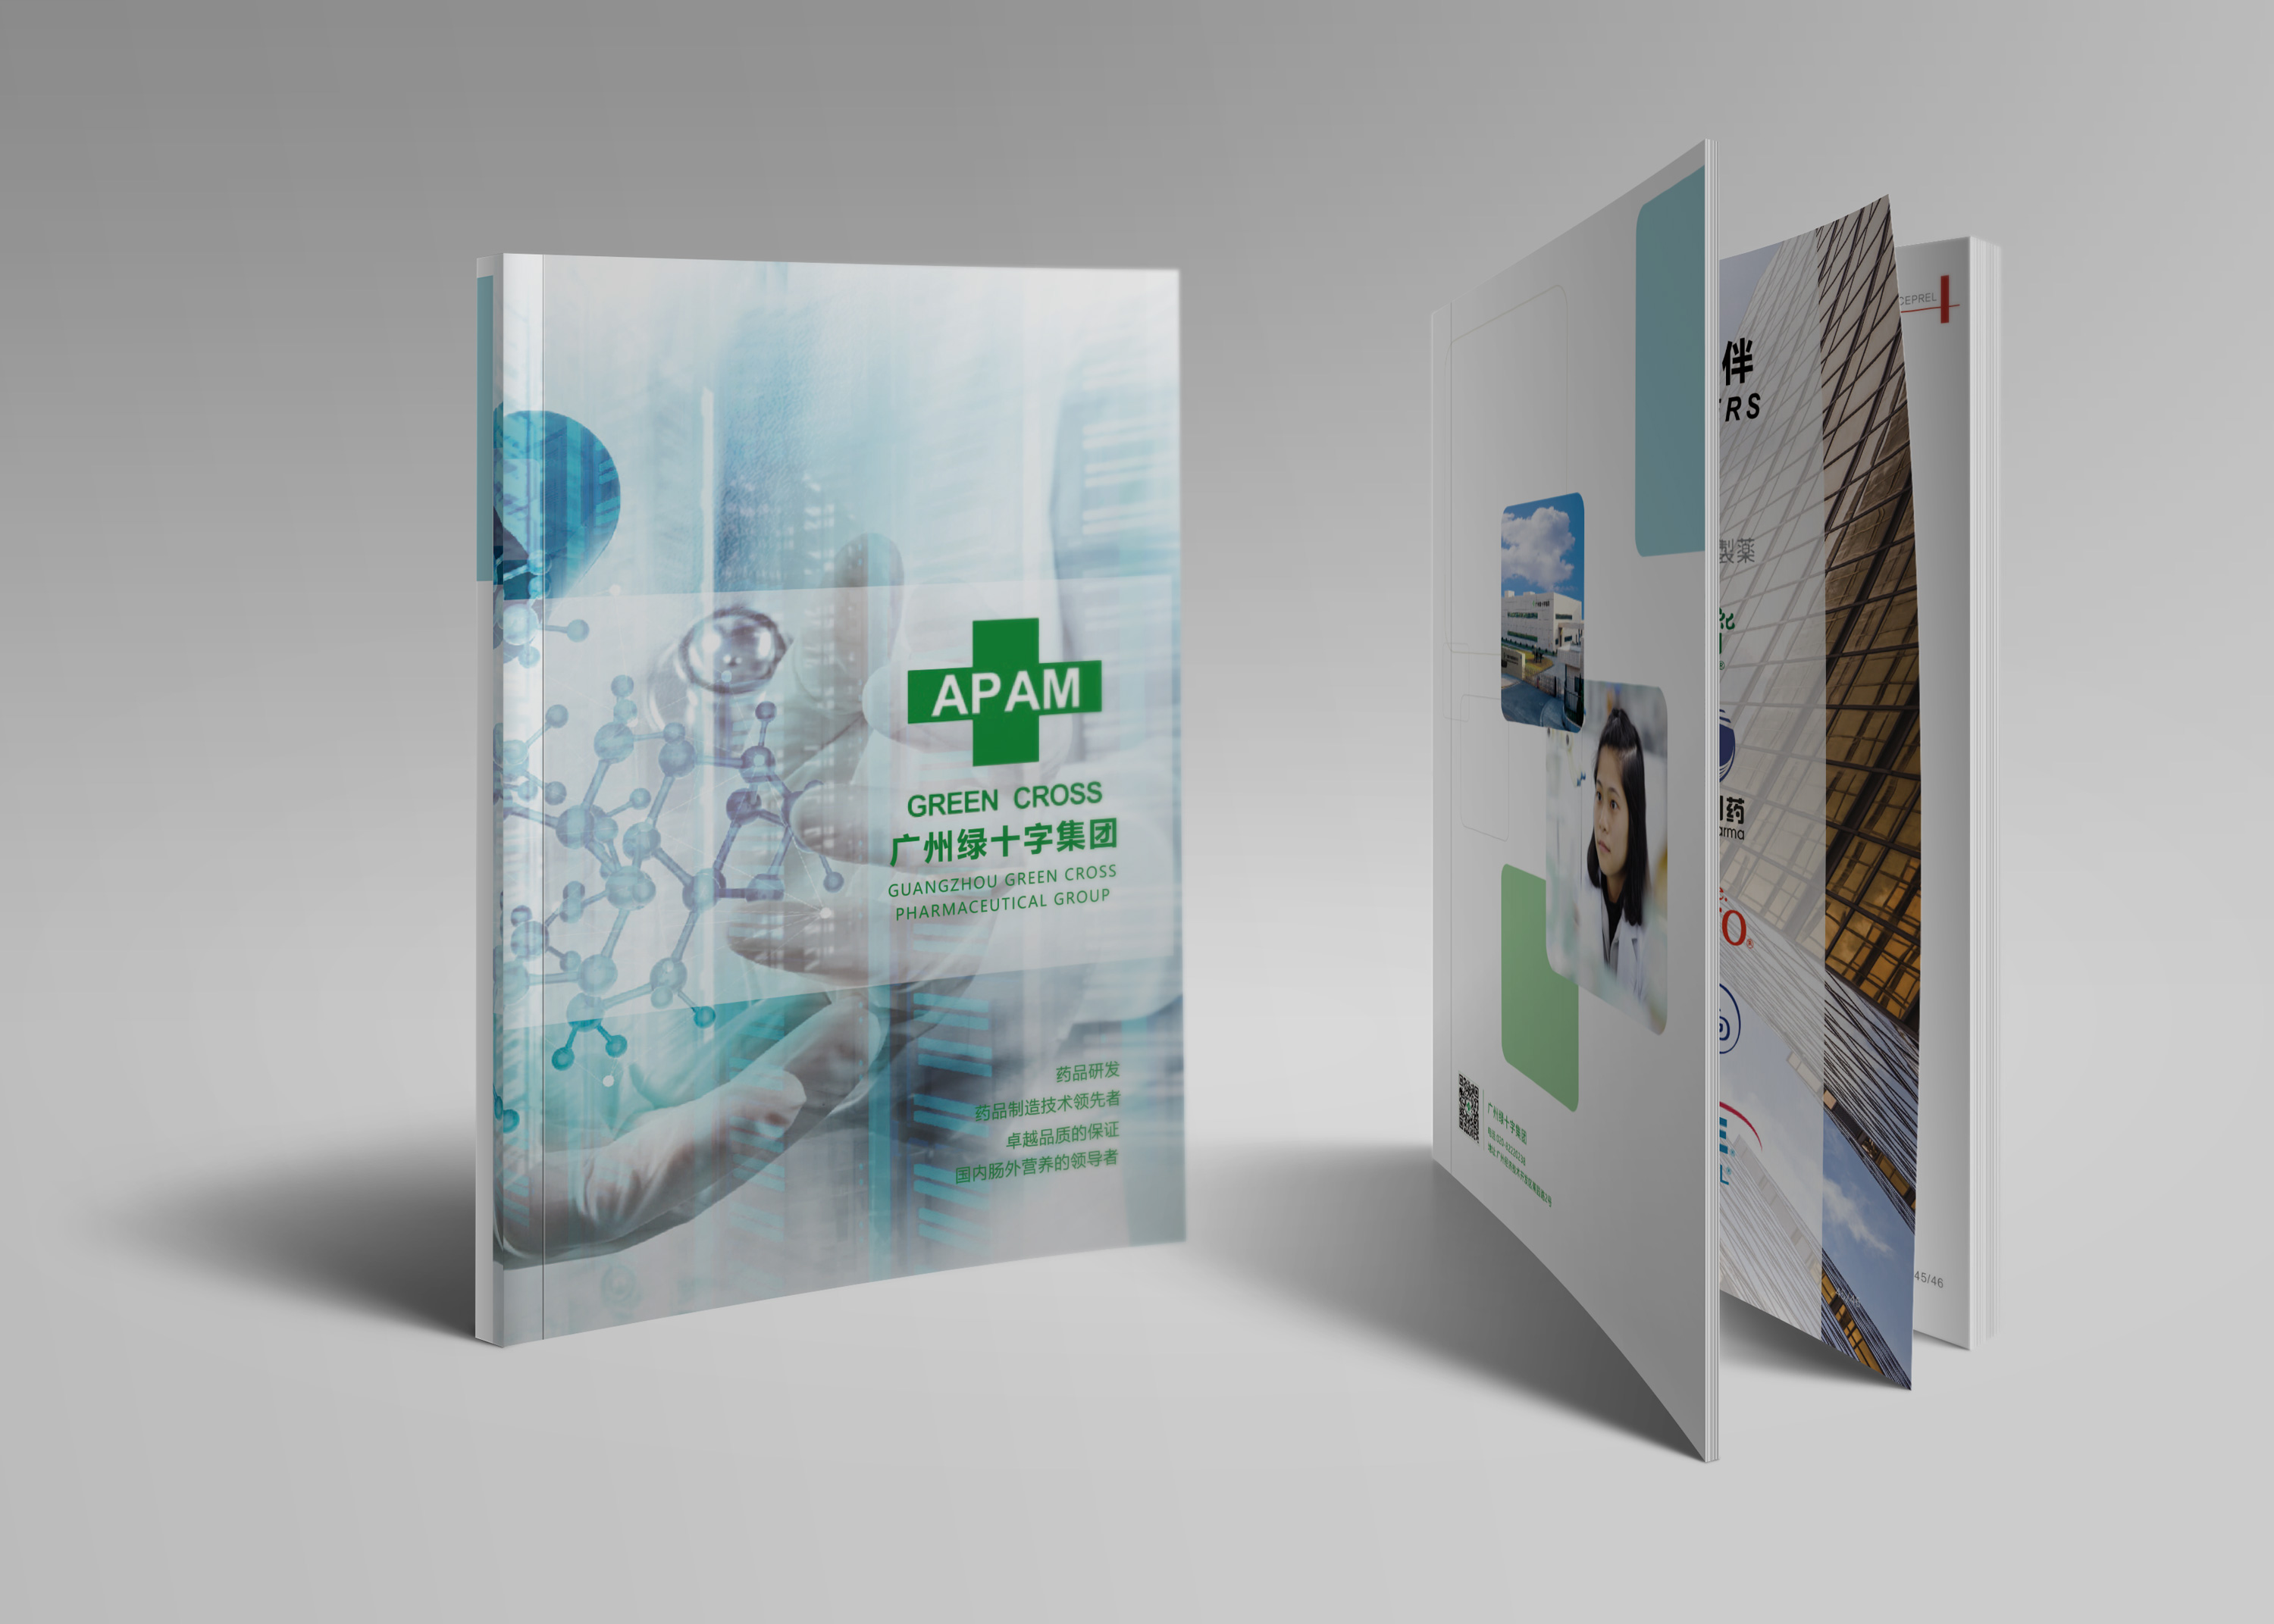 綠十字醫療畫冊設計_醫療畫冊設計_醫療宣傳冊設計_醫療公司畫冊設計